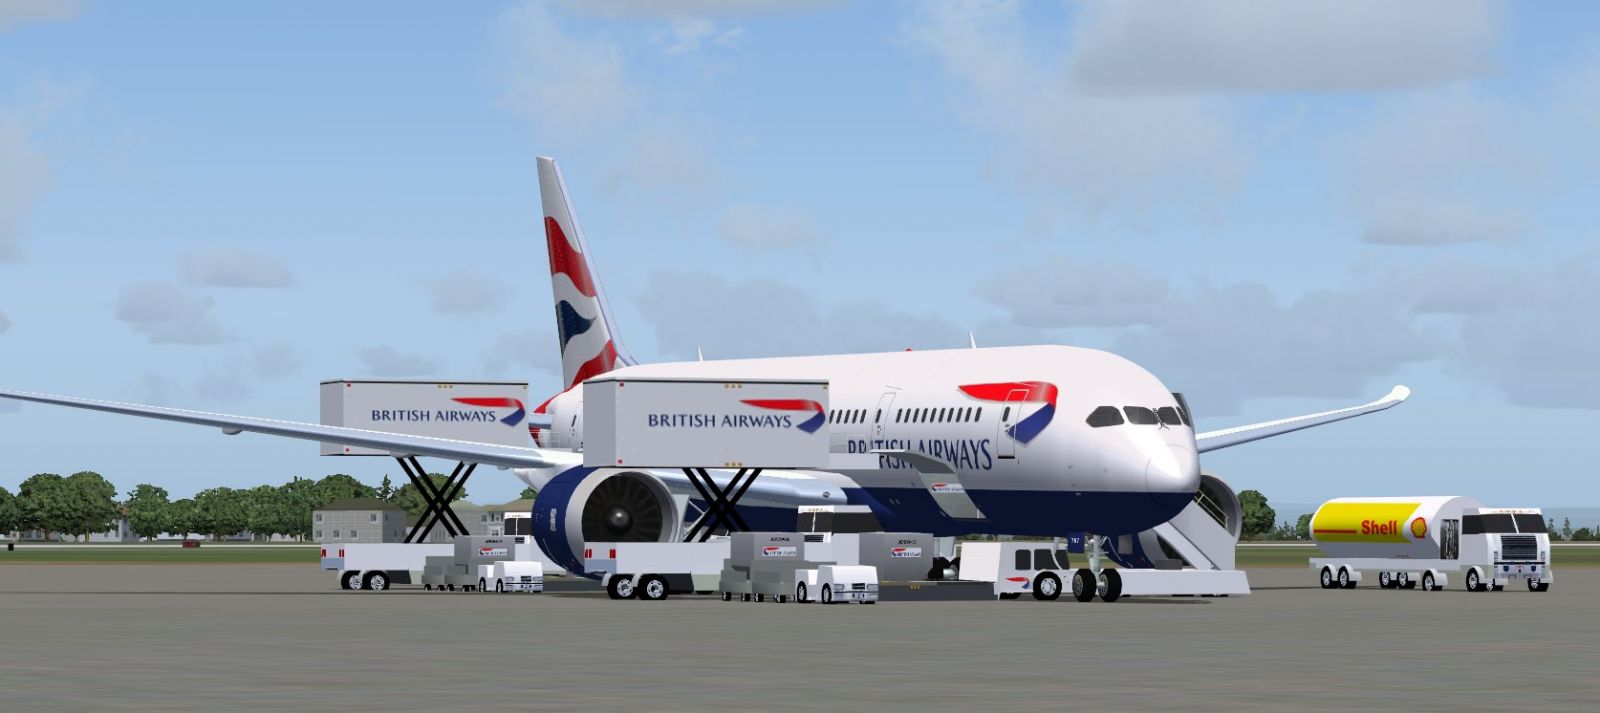 GSX and British Airways